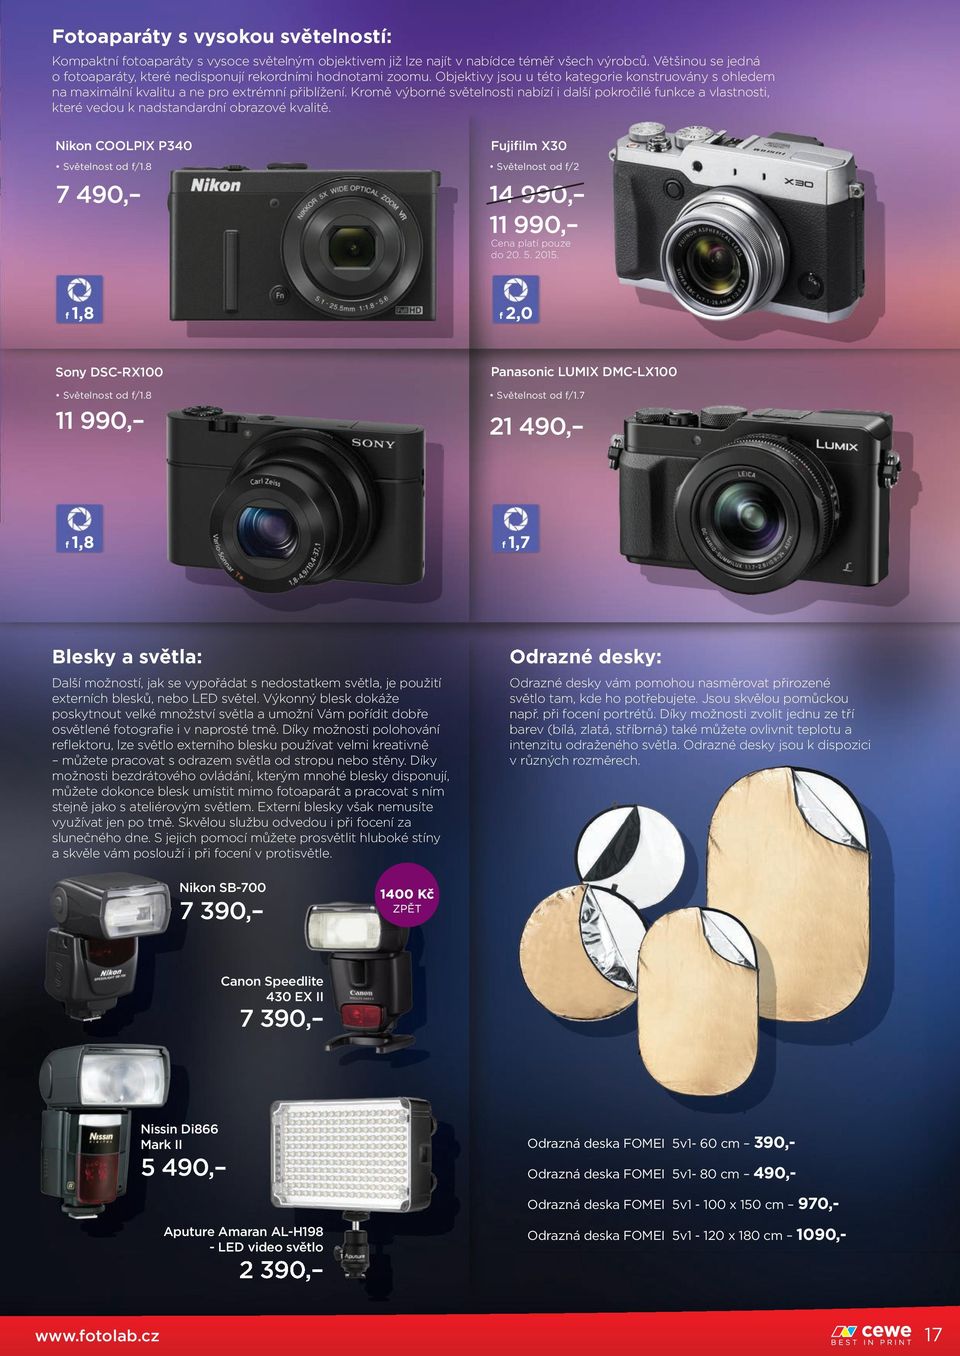 Kromě výborné světelnosti nabízí i další pokročilé funkce a vlastnosti, které vedou k nadstandardní obrazové kvalitě. Nikon COOLPIX P340 Světelnost od f/1.